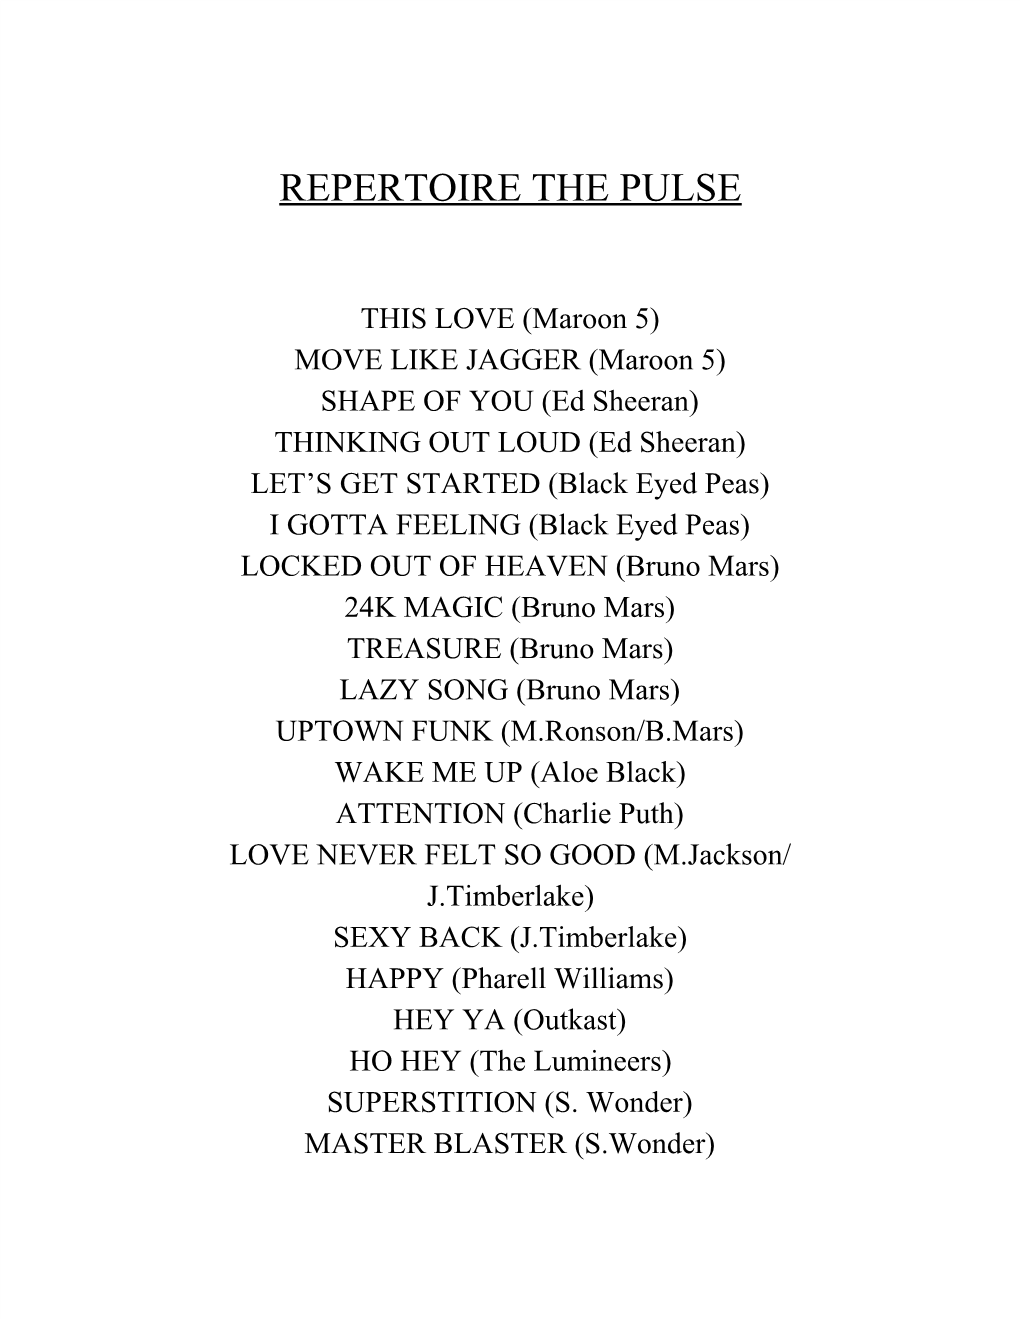 Repertoire the Pulse